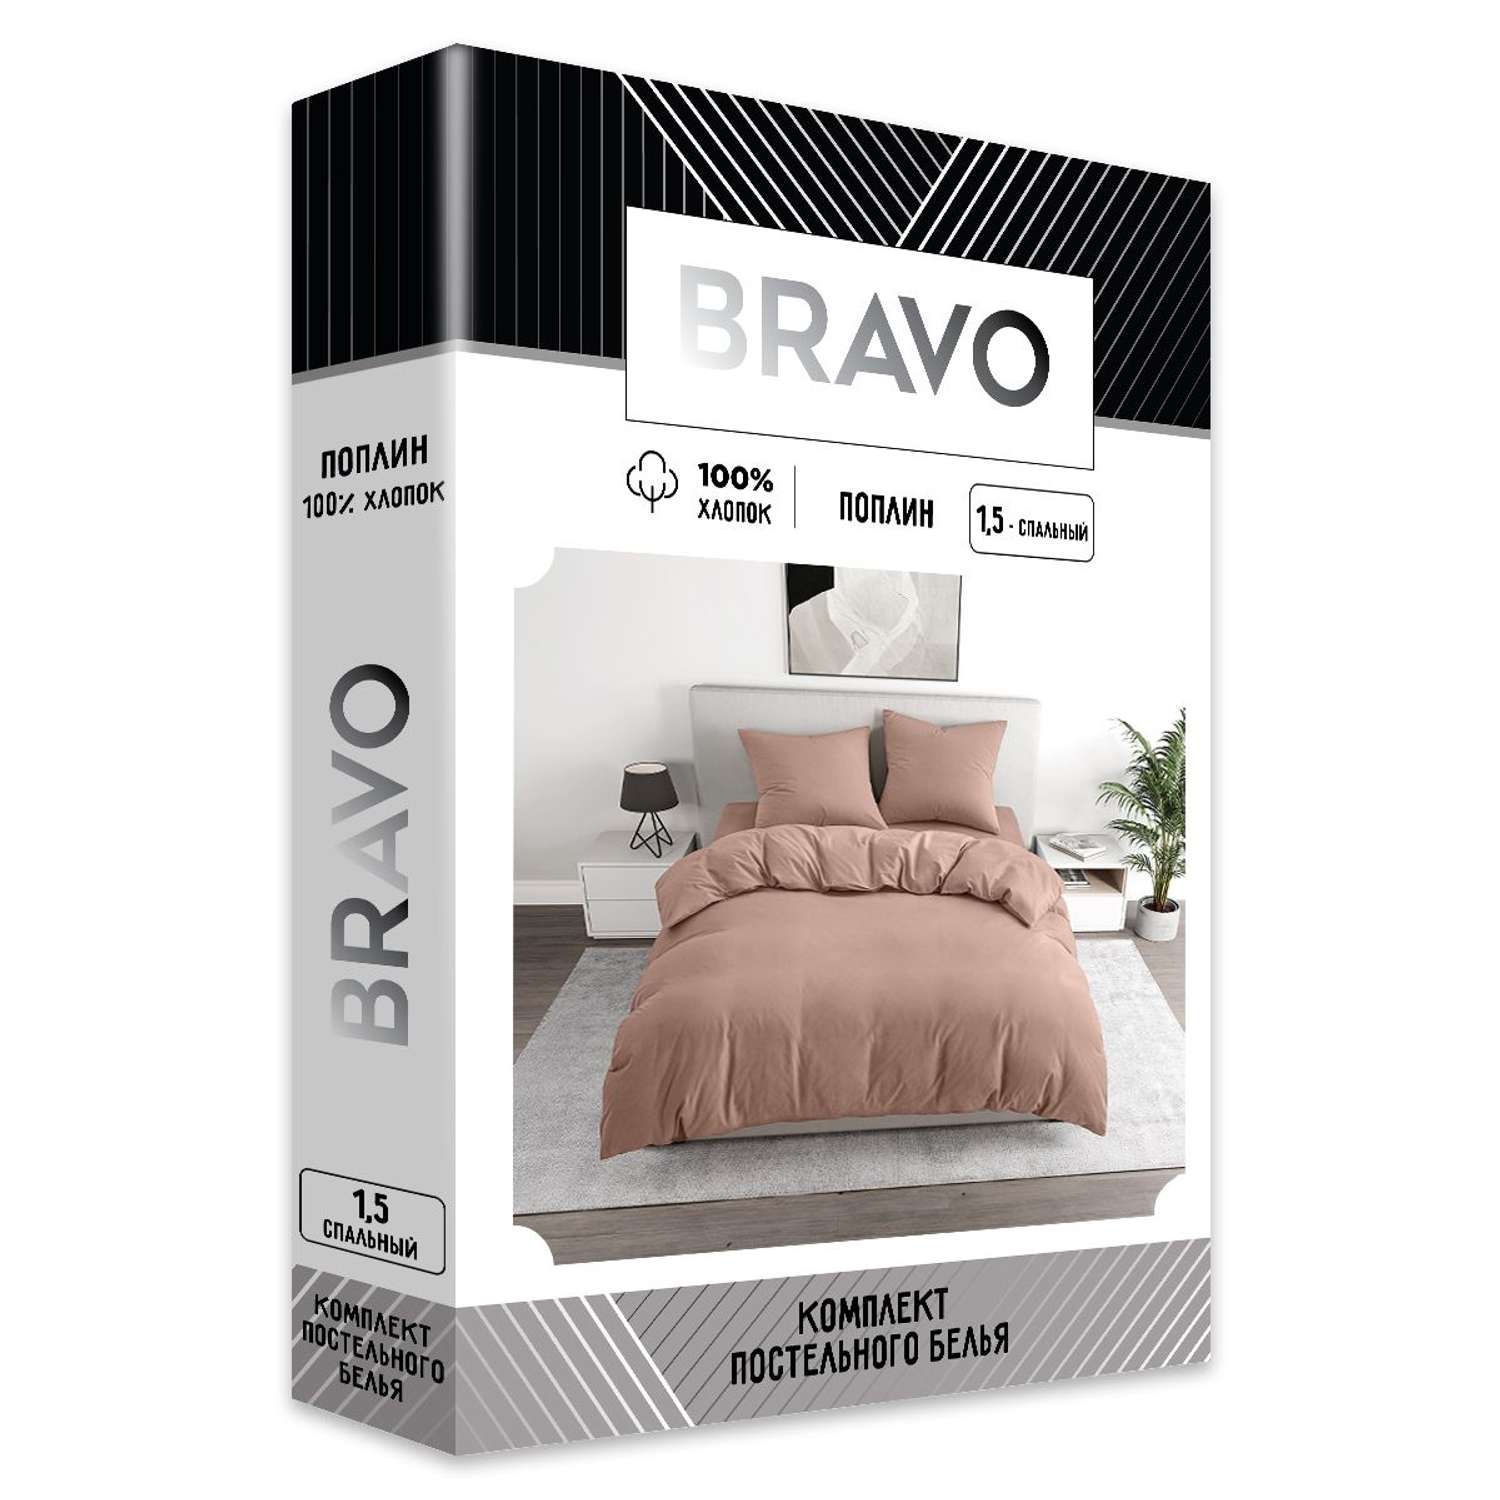 Комплект постельного белья BRAVO 1.5-спальный наволочки 70х70 рис.5112-1 пудровый - фото 5